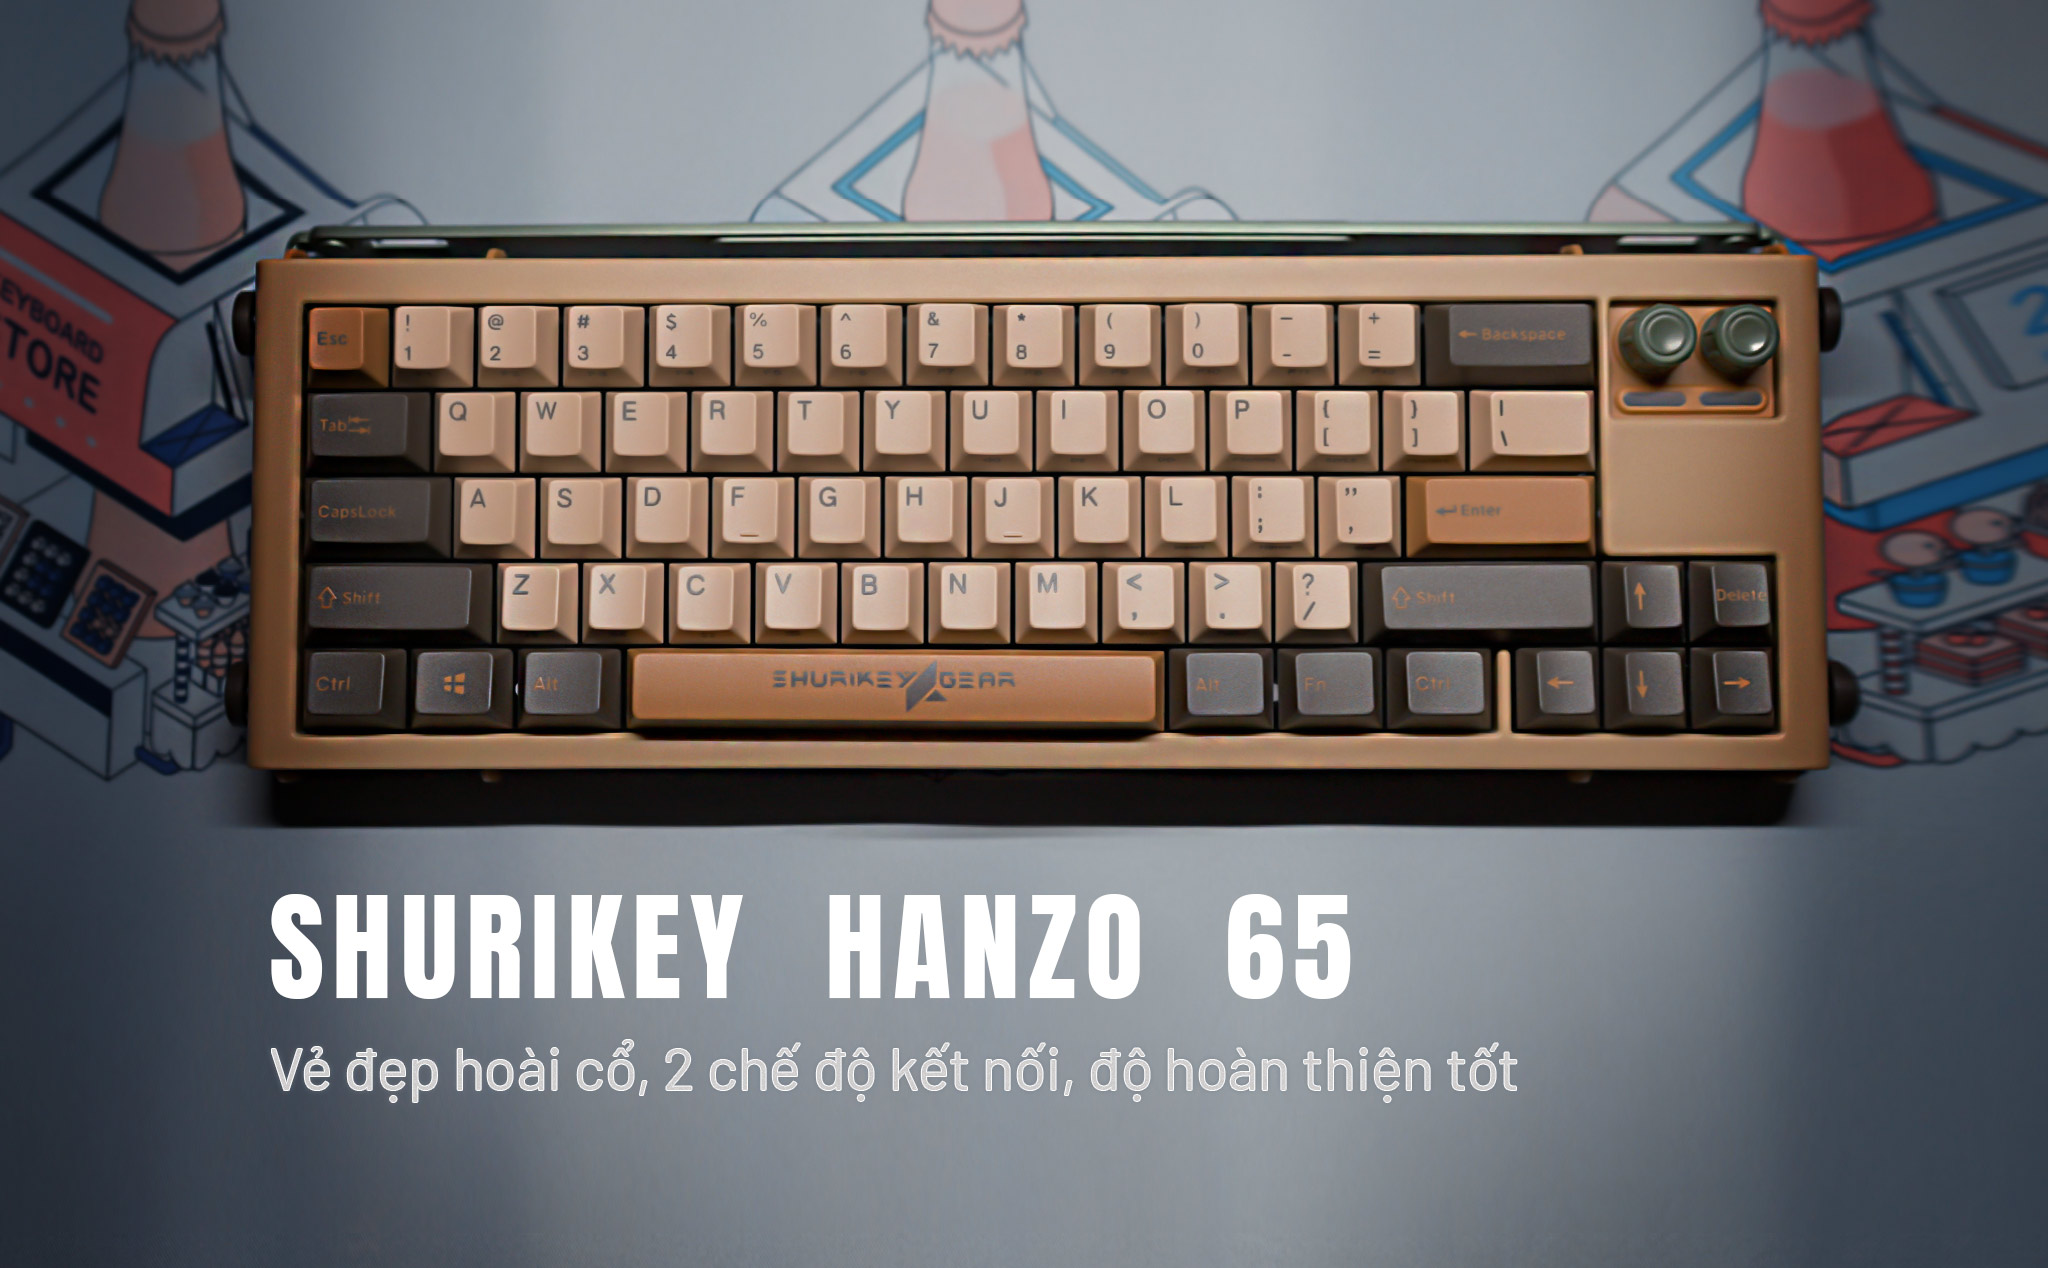 Trên tay bàn phím cơ Shurikey Hanzo65: Vẻ đẹp hoài cổ, 2 chế độ kết nối, độ hoàn thiện tốt.